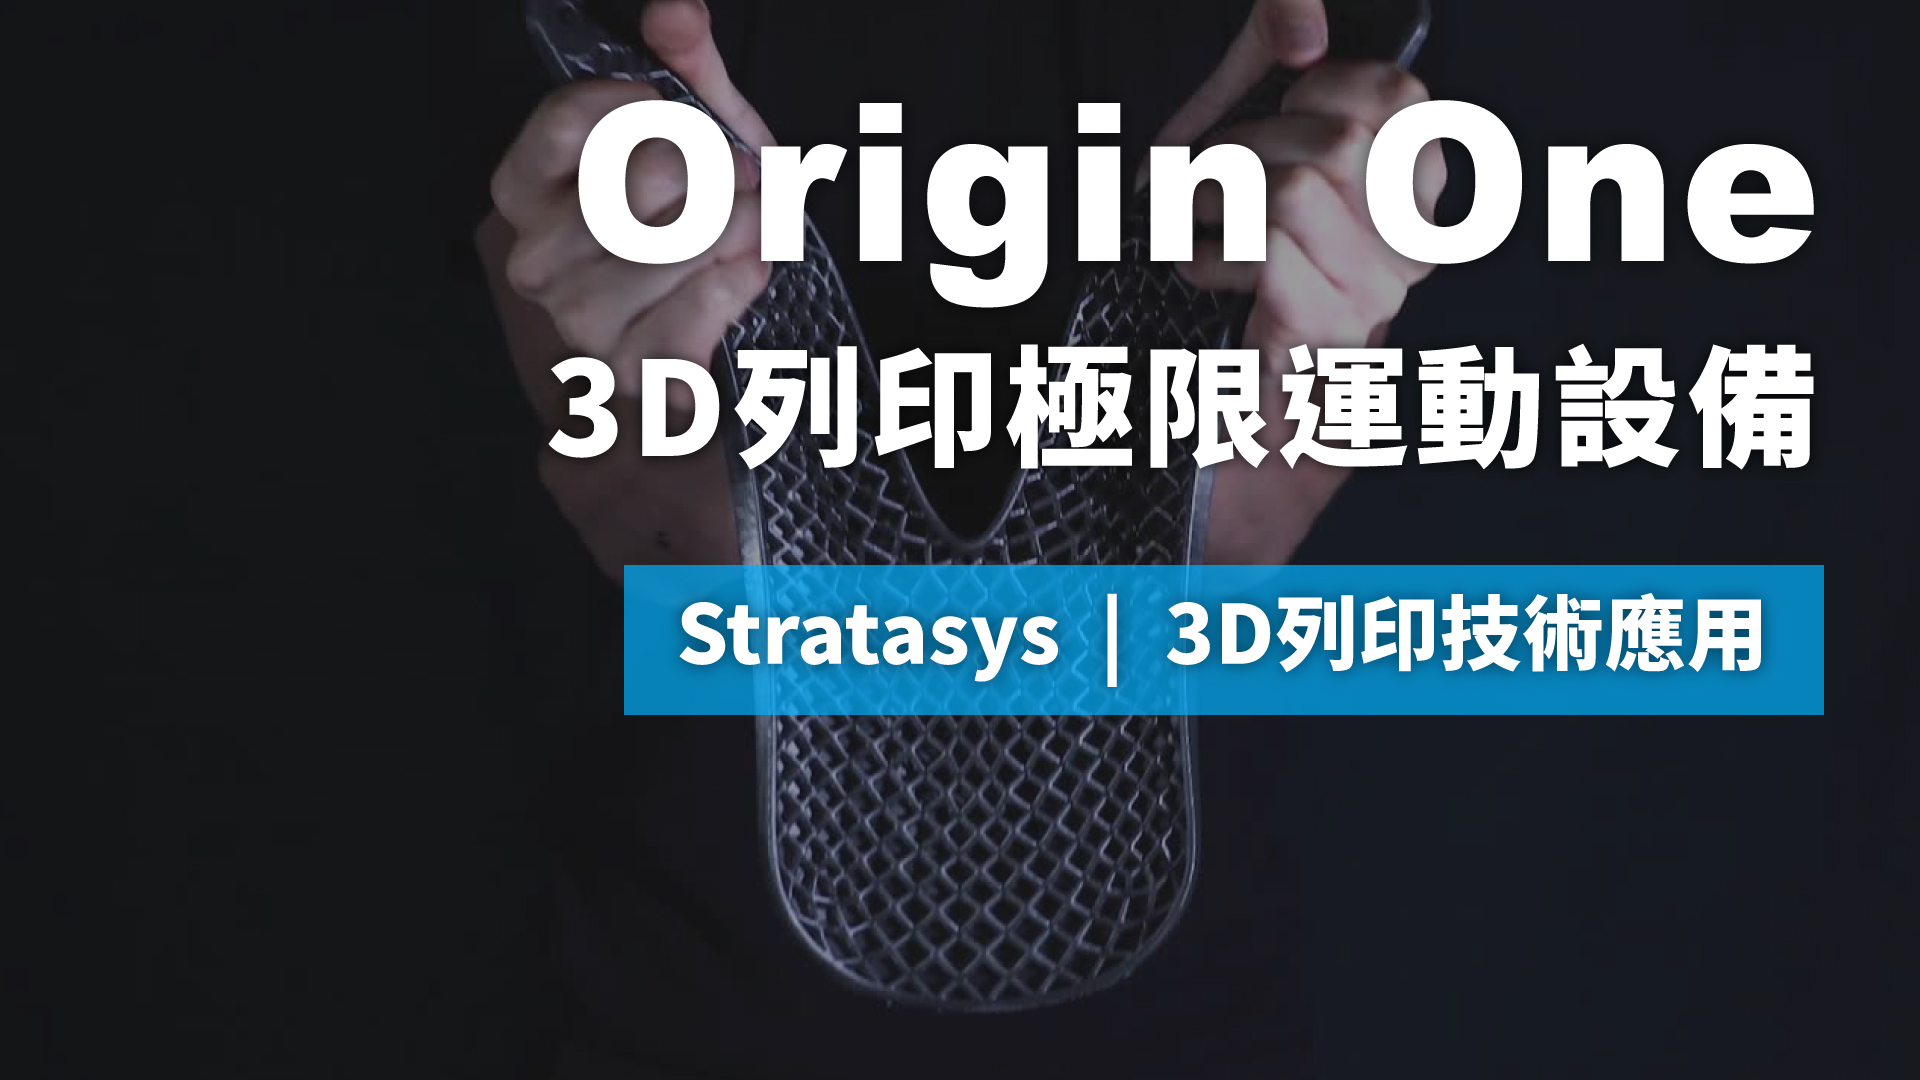 3D列印技術應用 | 使用Origin One 3D列印極限運動設備